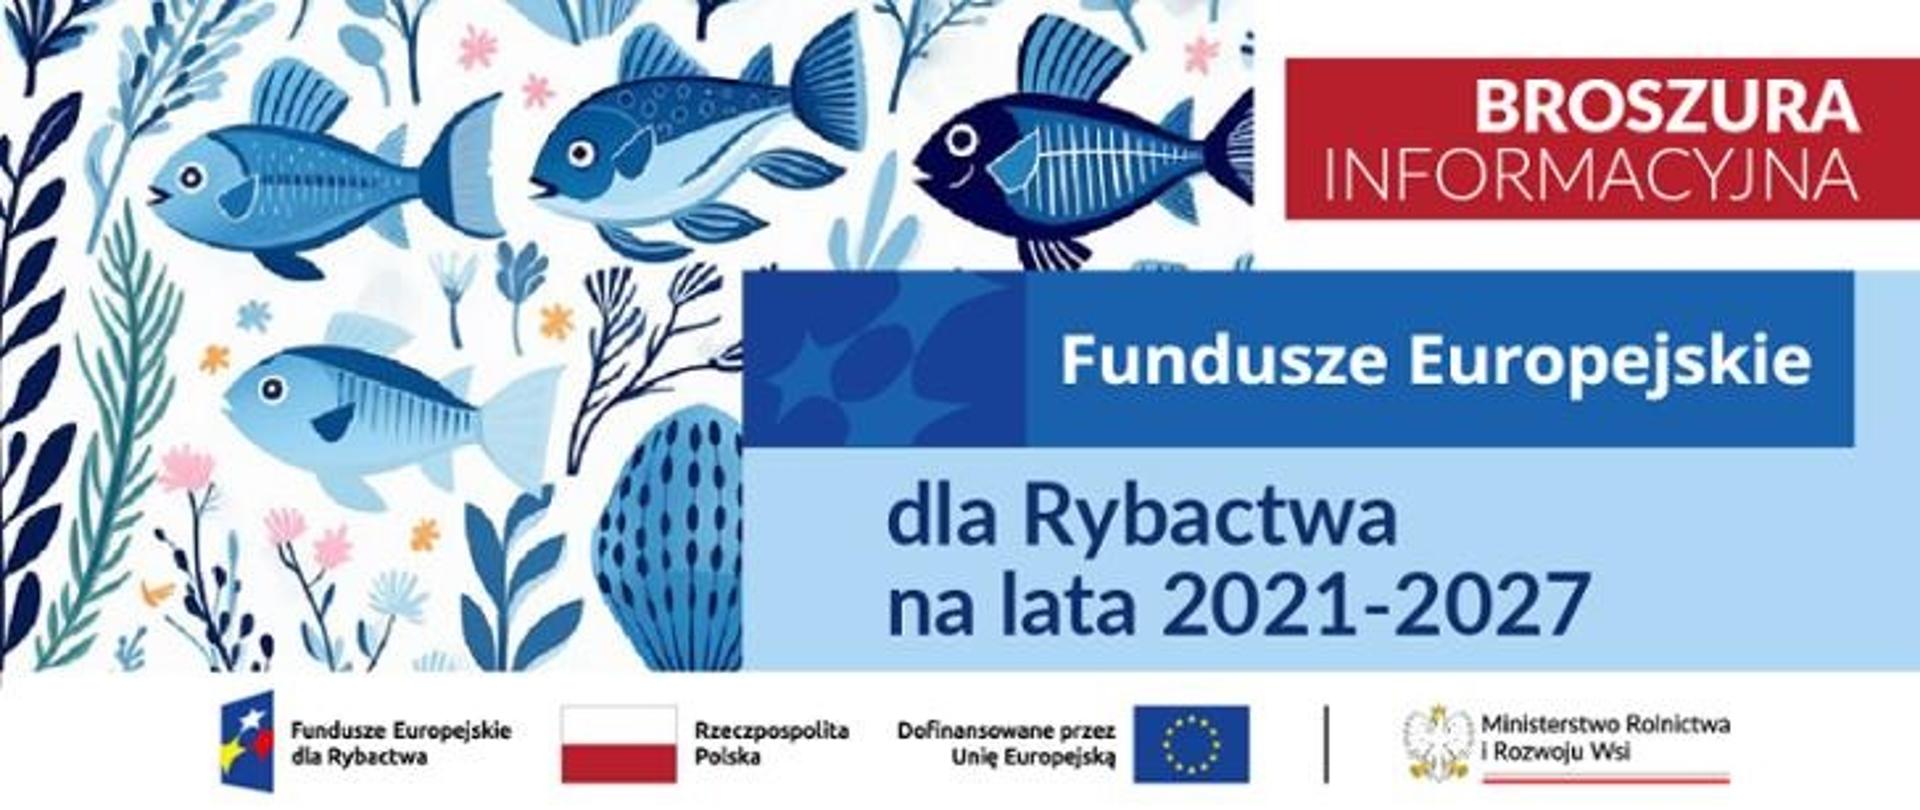 Fundusze Europejskie dla Rybactwa 2021-2027